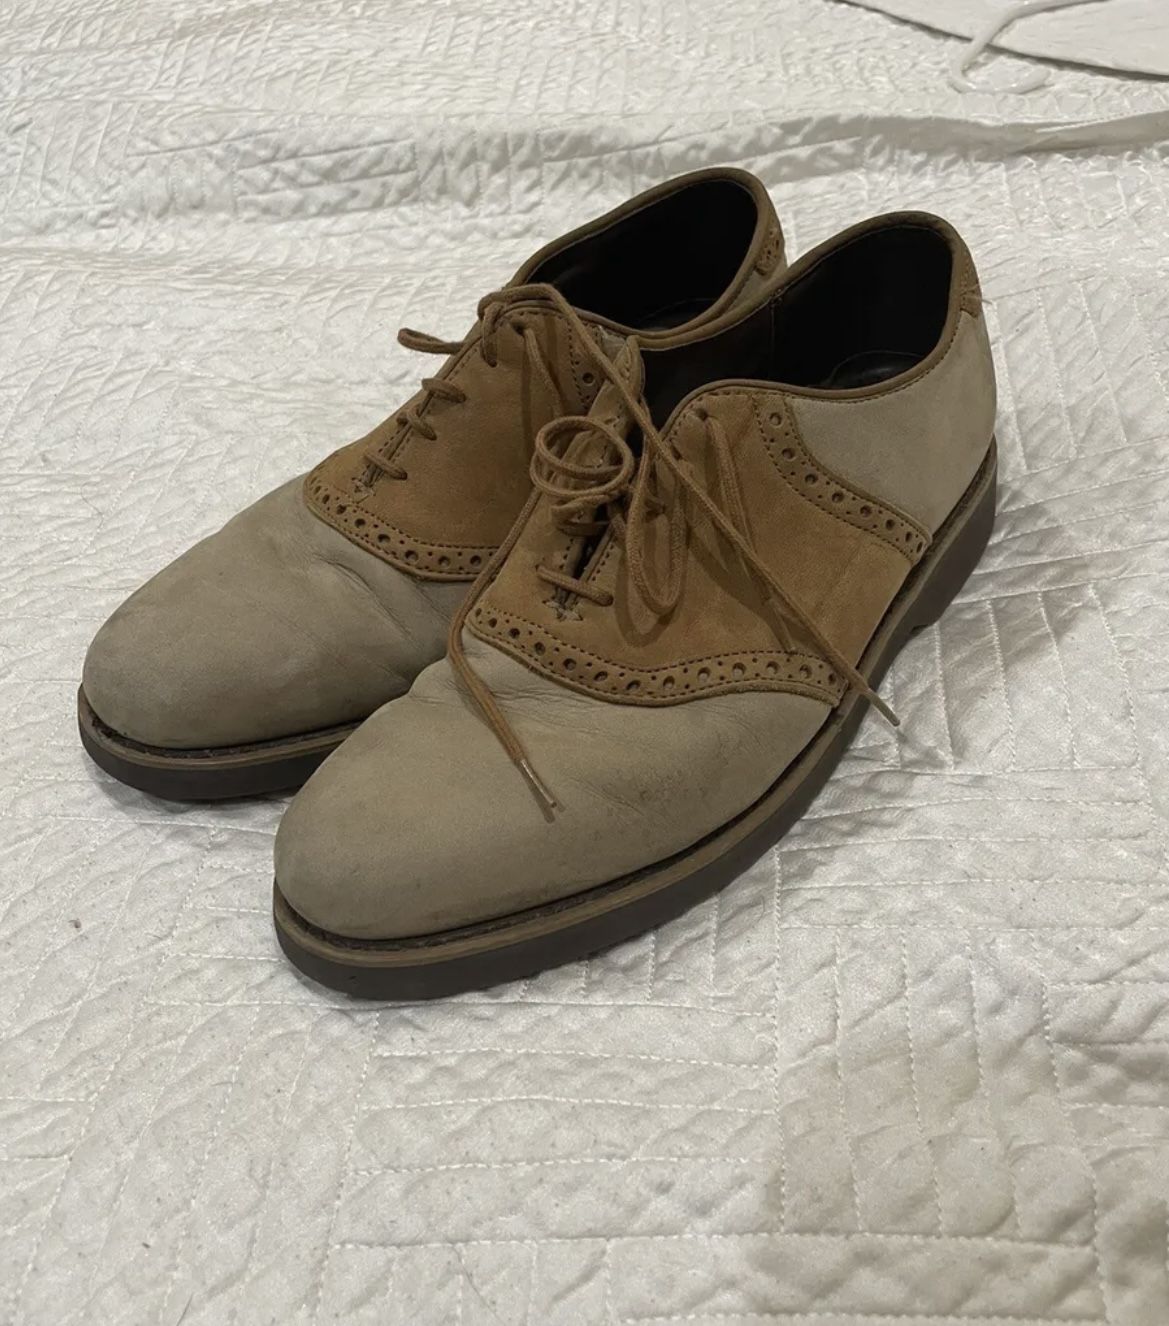 Dexter mens dress shoes Size 9.5